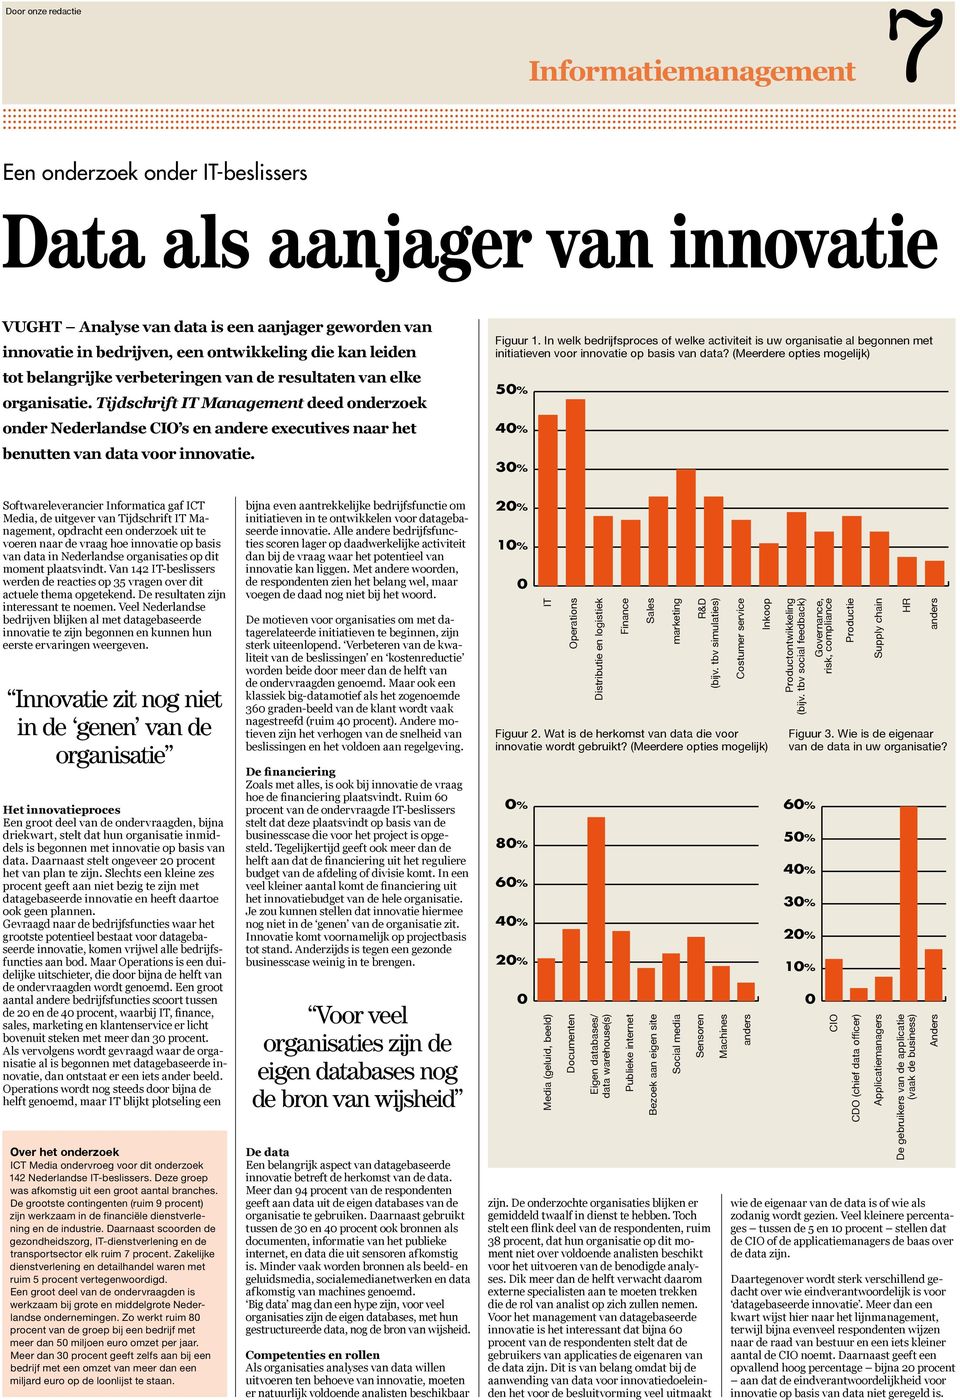 Tijdschrift IT Management deed onderzoek onder Nederlandse CIO s en andere executives naar het benutten van data voor innovatie. Figuur 1.